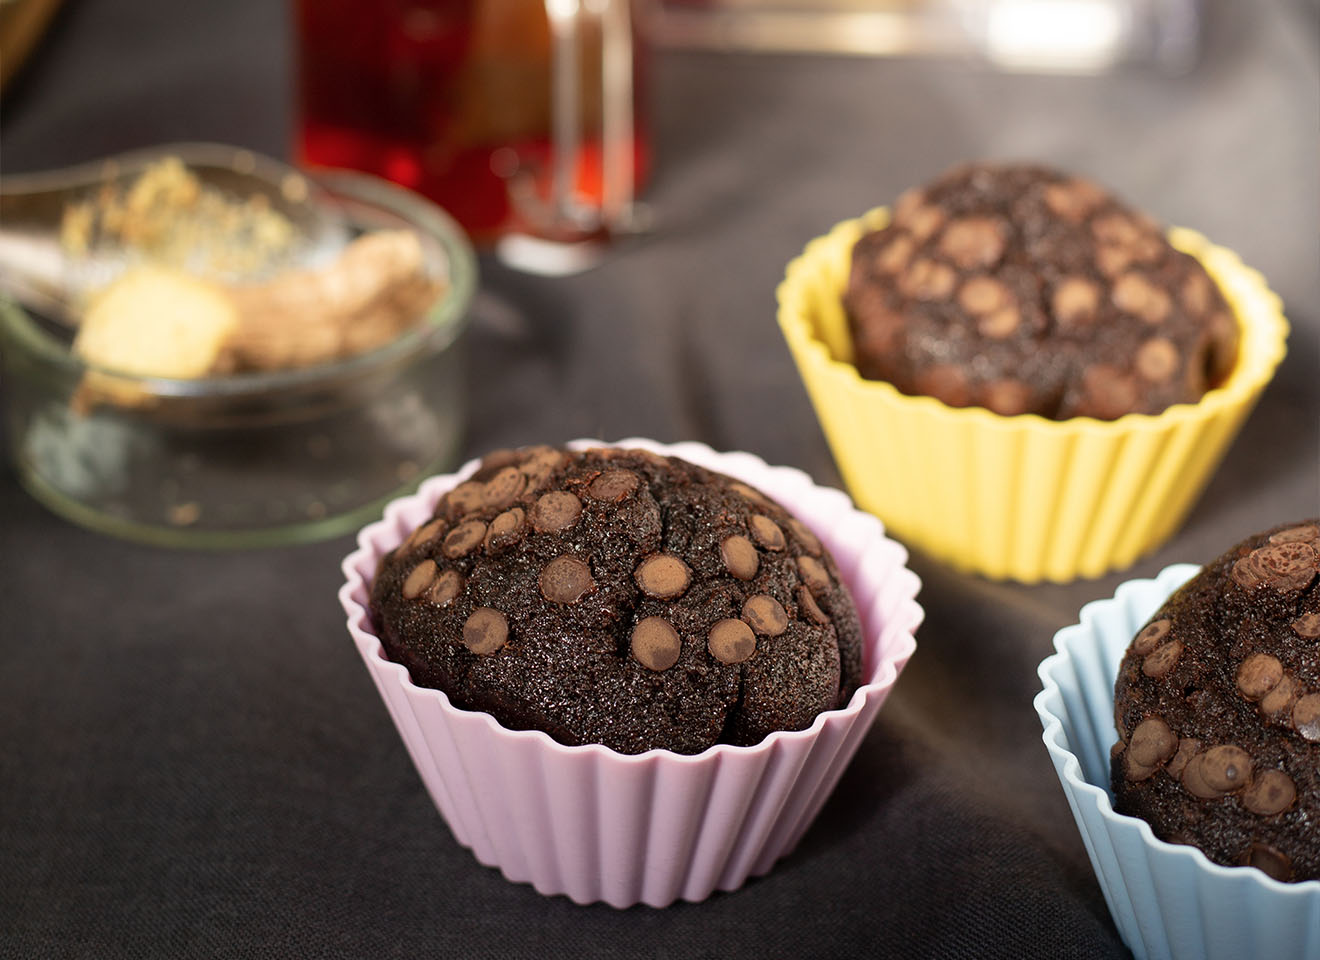 Silicone muffin cups